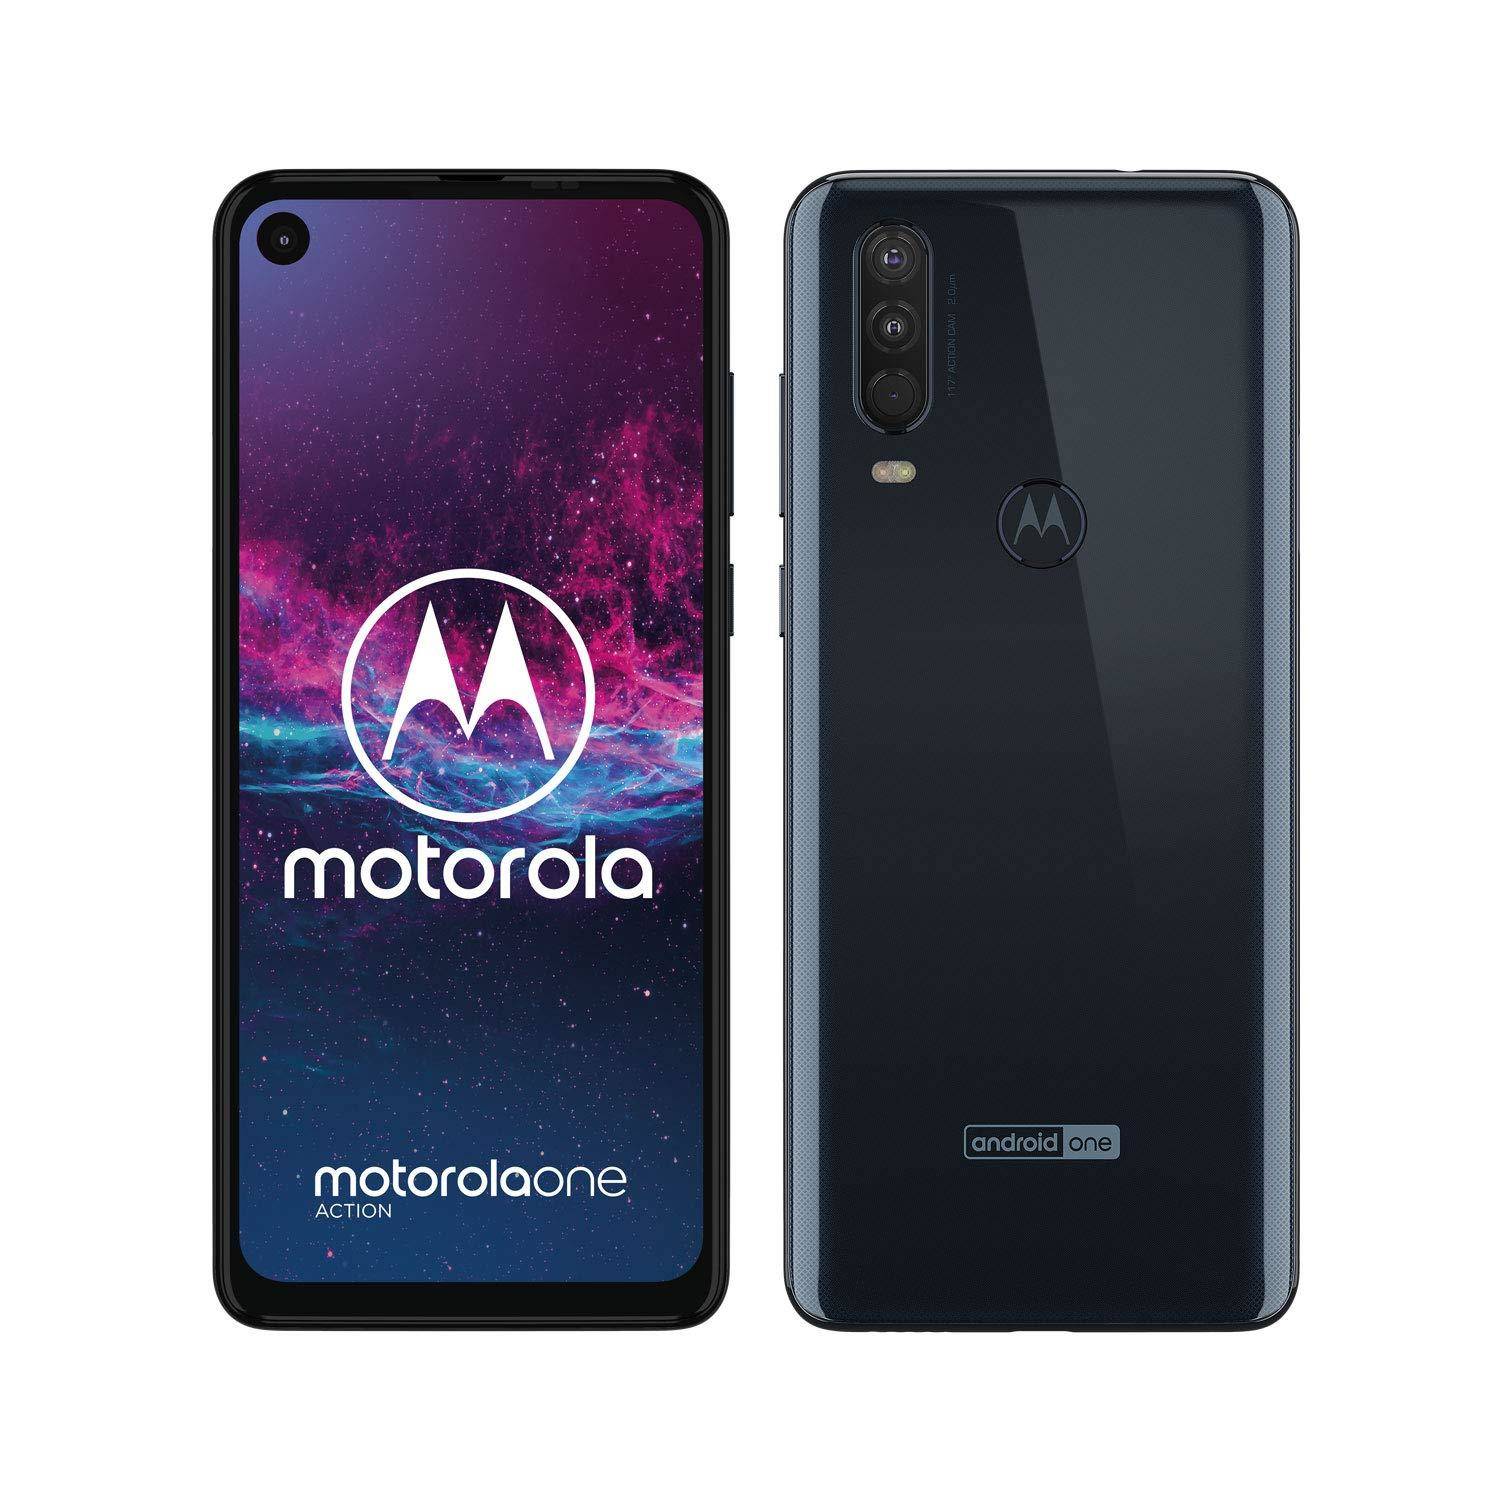 Motorola One Action स्मार्टफोन को लेकर जानकारी आयी सामने, जानें 